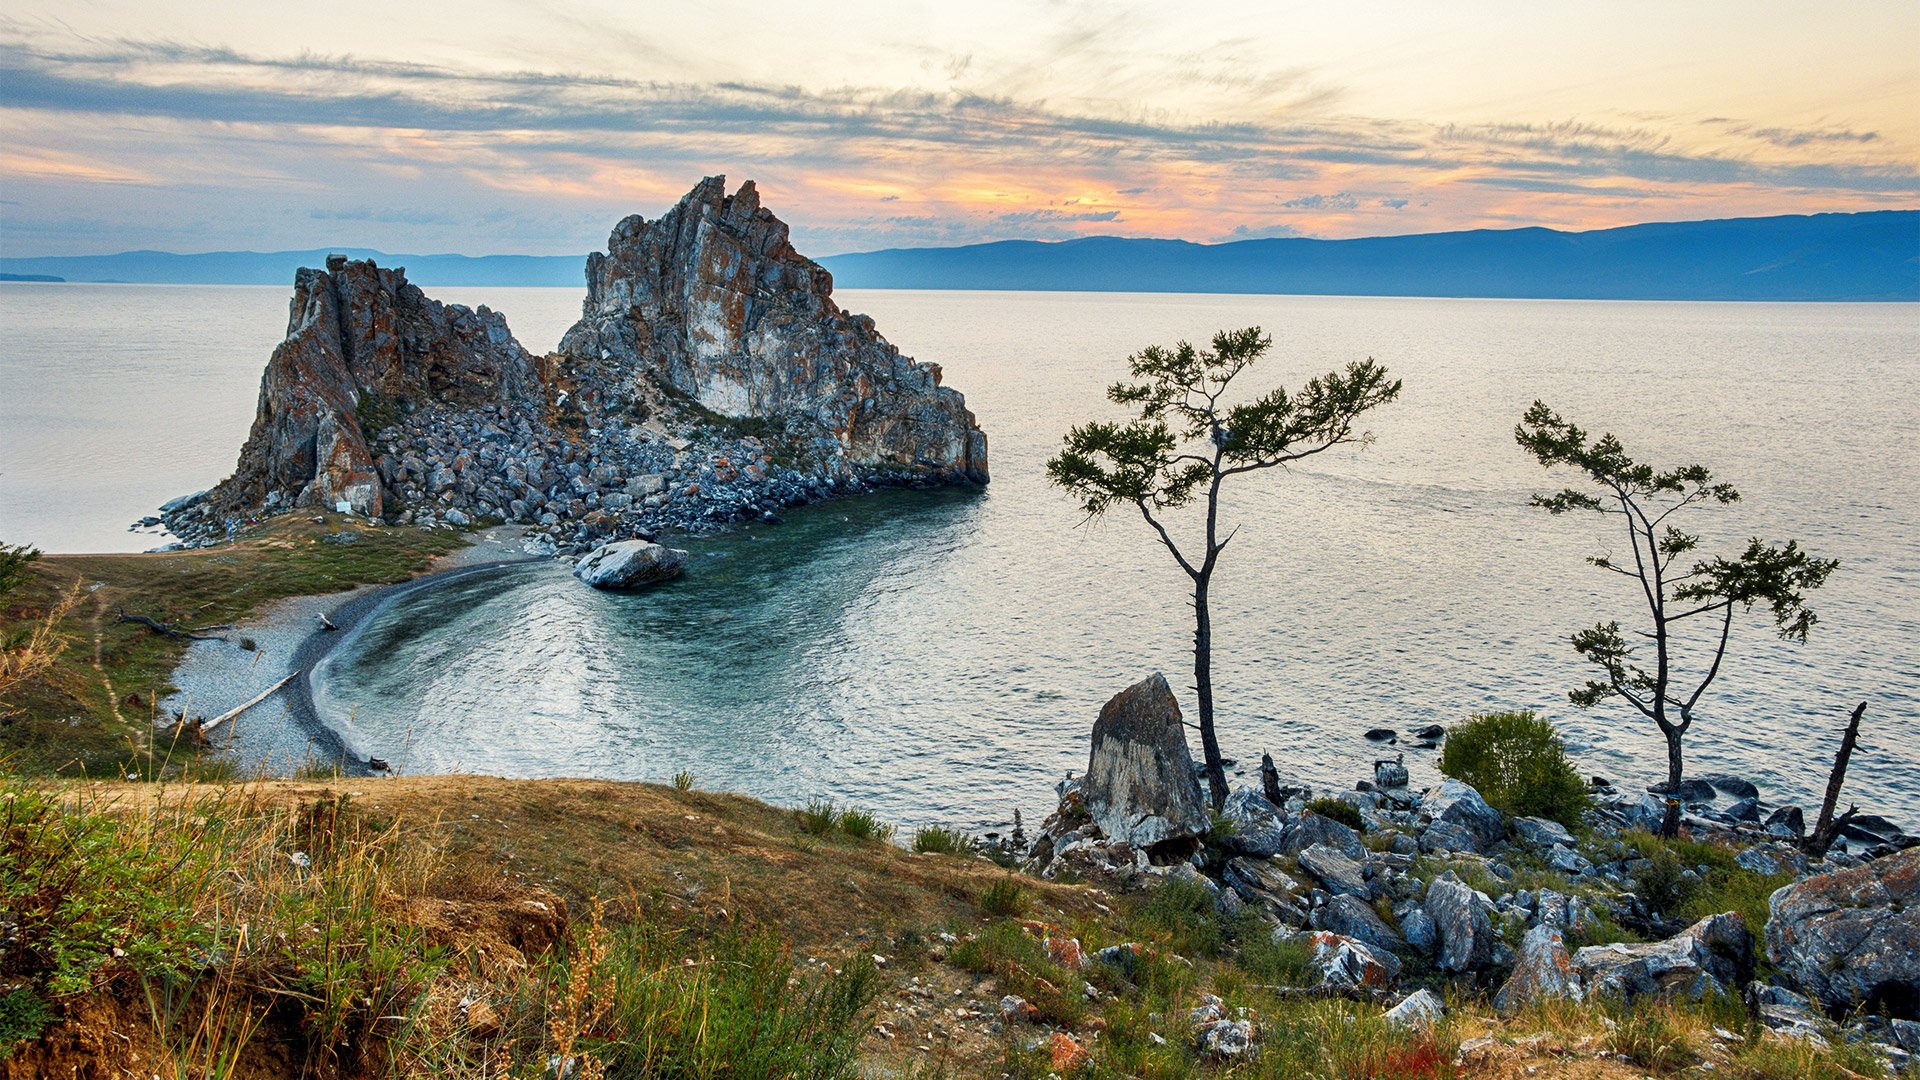 Проблемы Озера Байкал Реферат